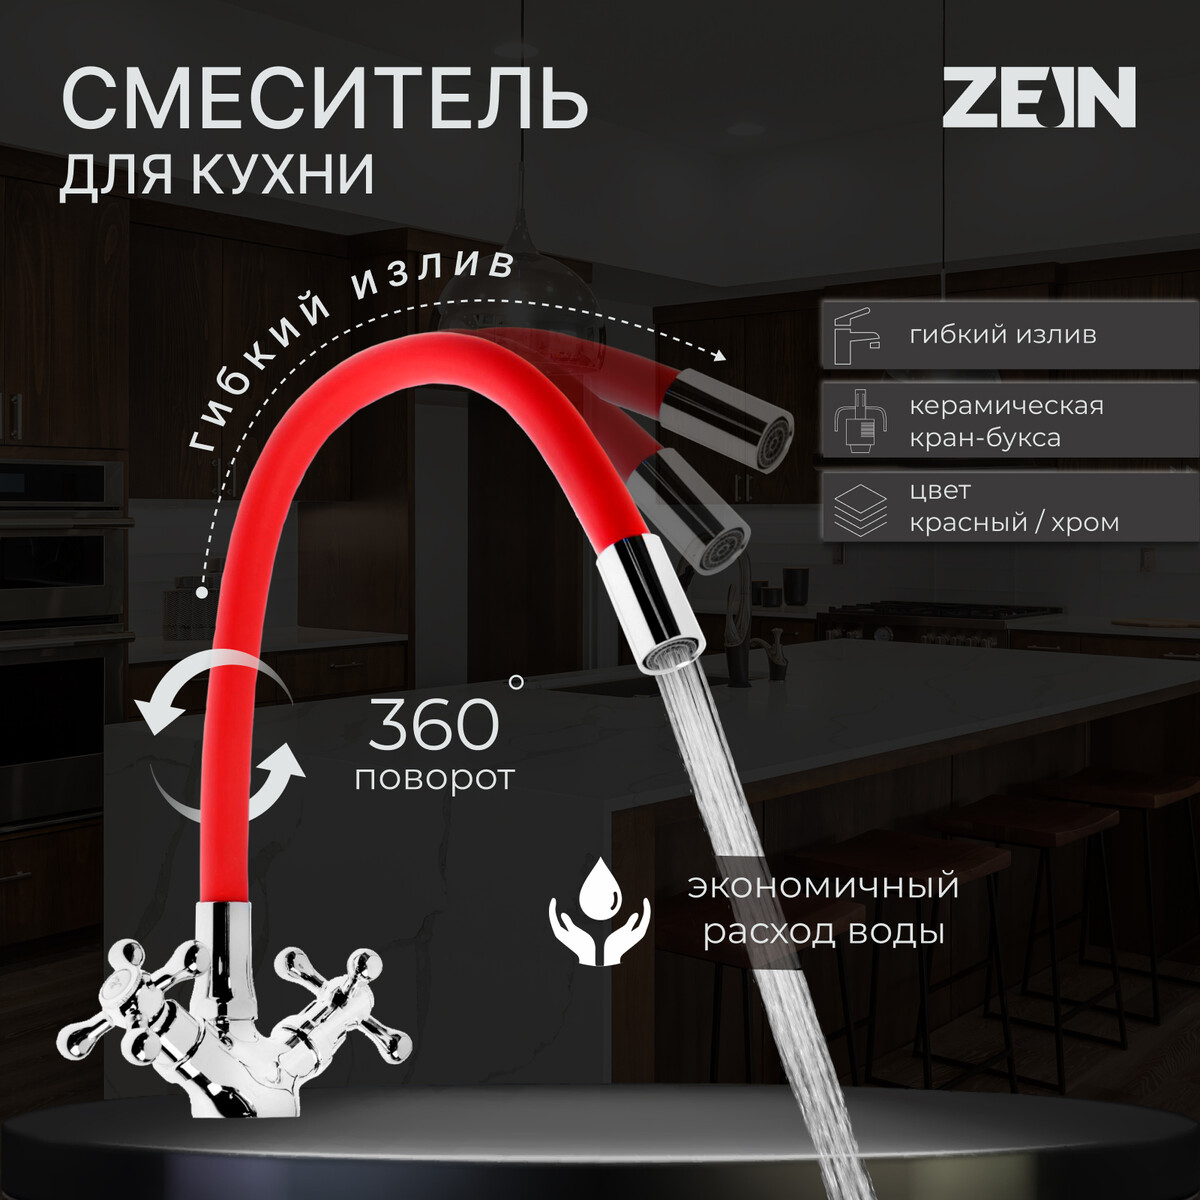 Смеситель для кухни zein z2106, двухвентильный, силиконовый излив, красный/хром смеситель для кухни juguni с картриджем хром 0402 947c